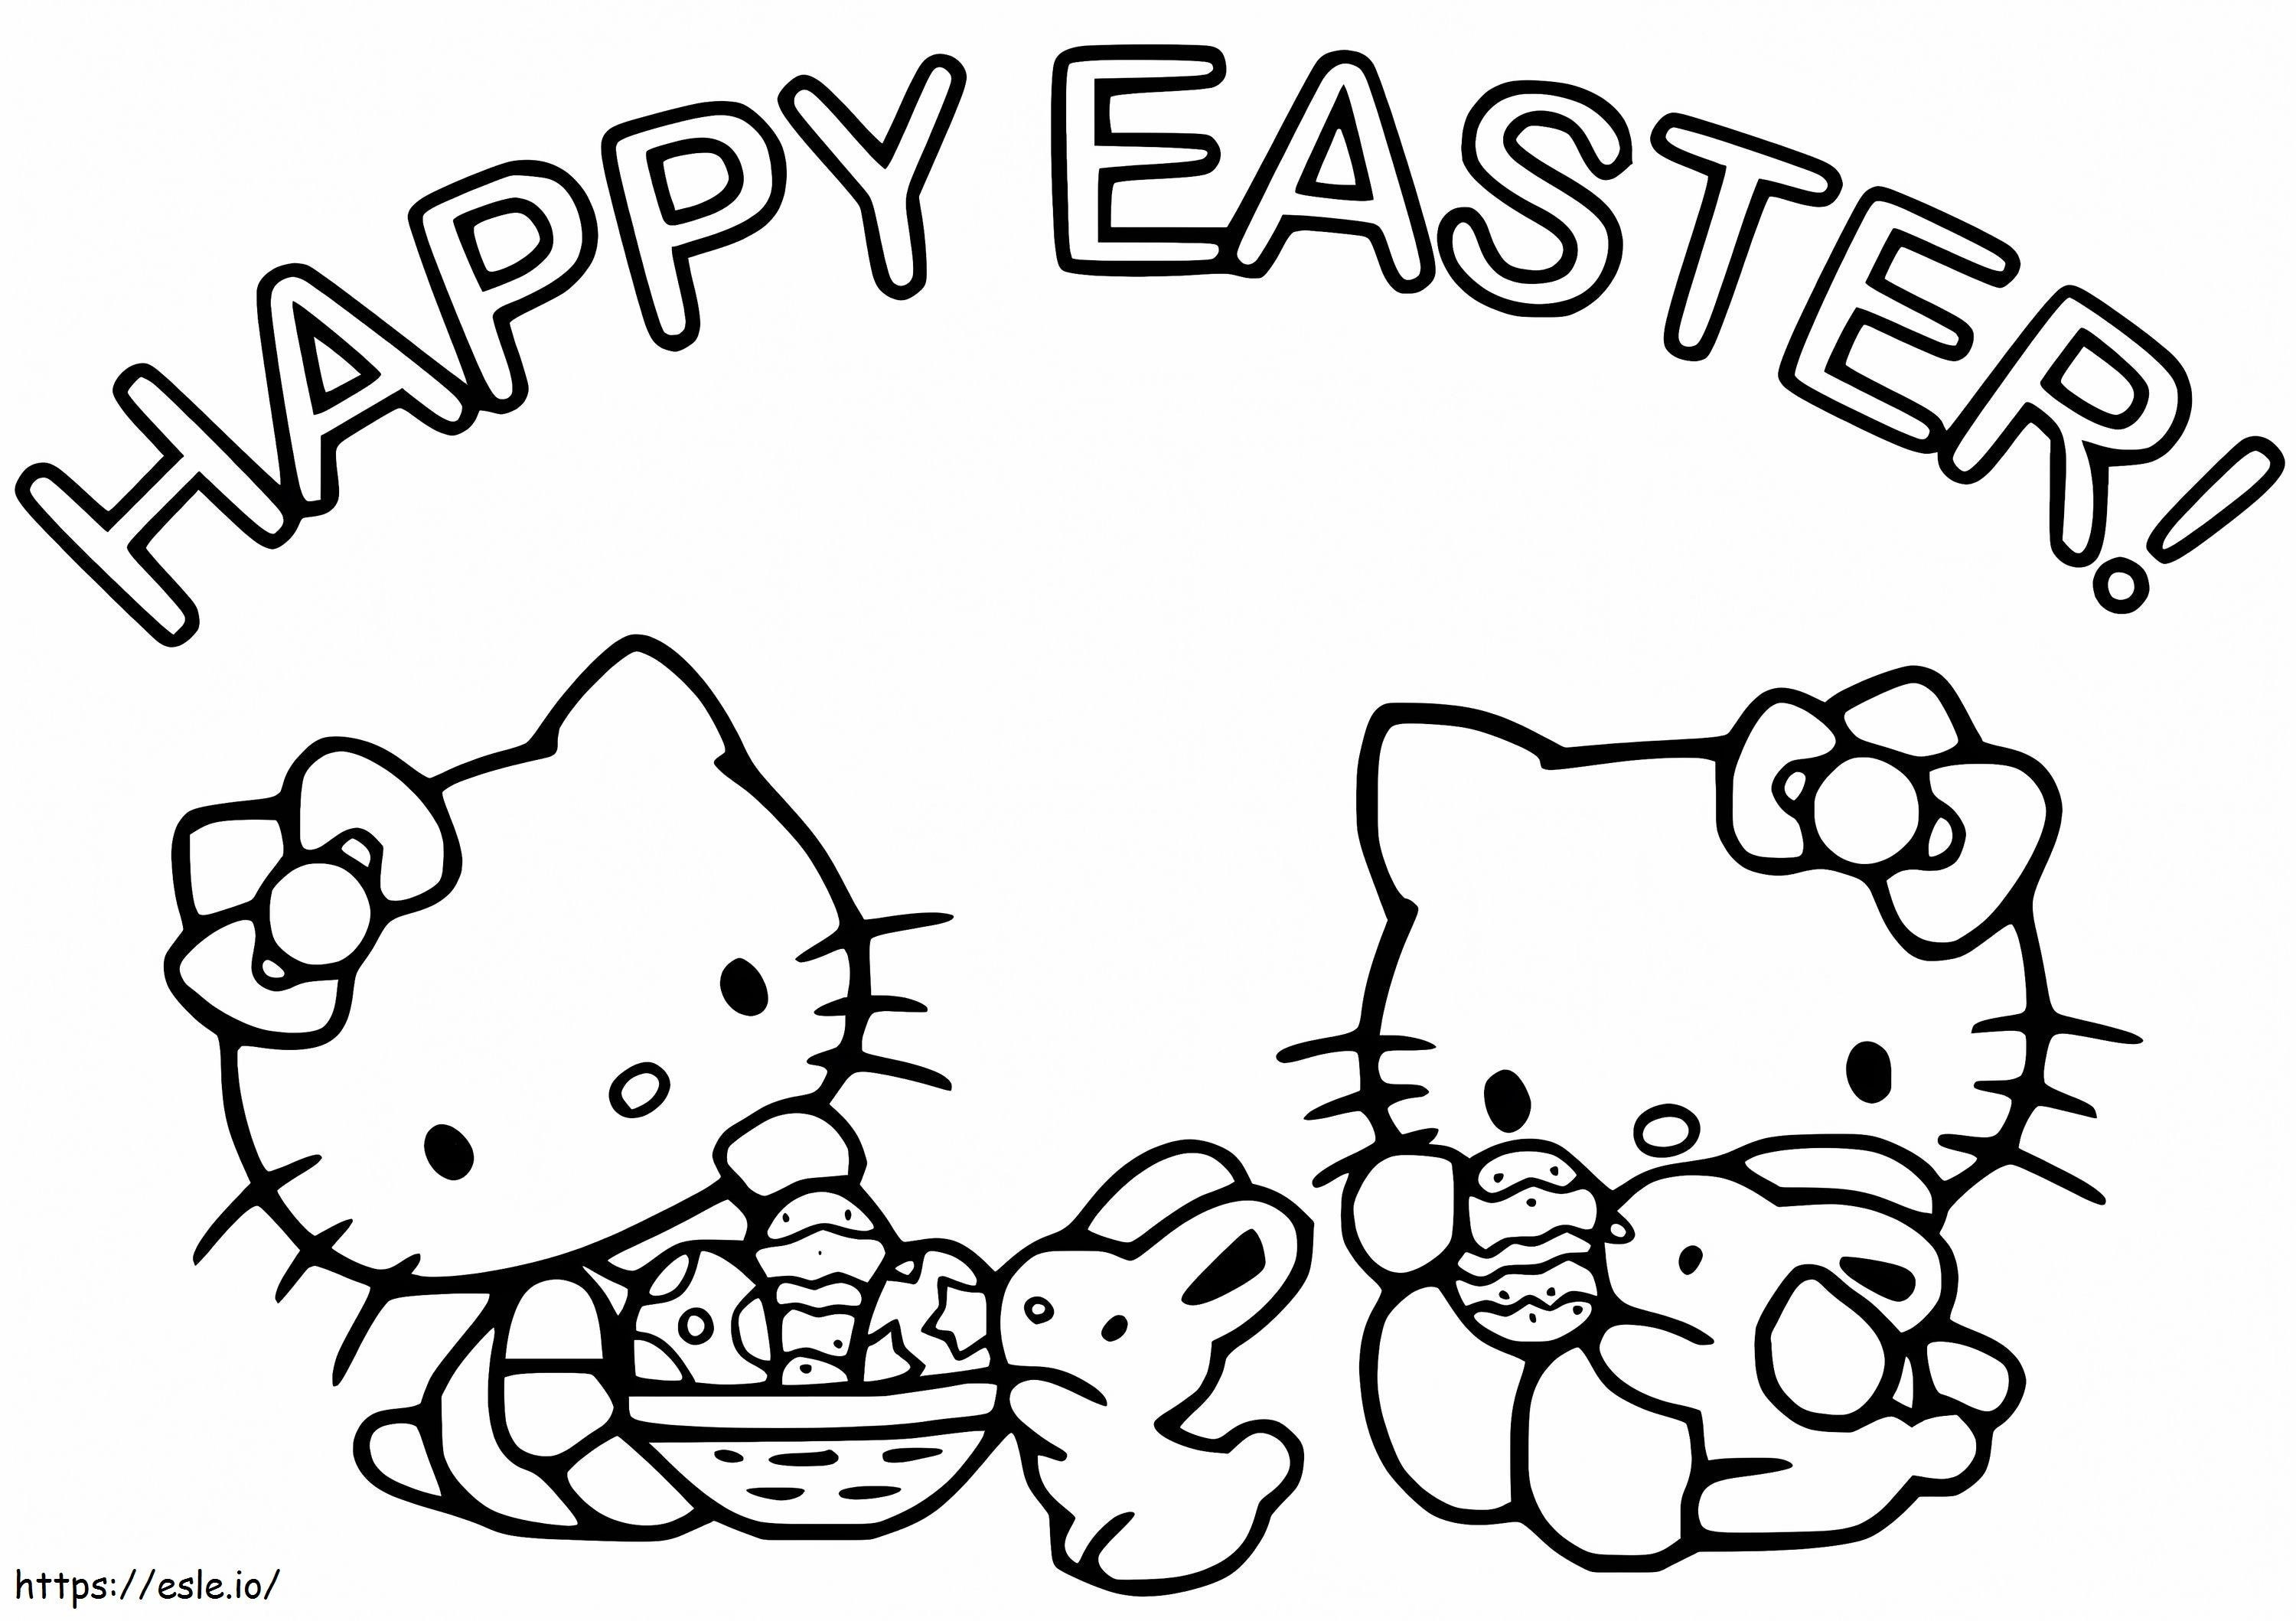 Coloriage Joyeuses Pâques avec Hello Kitty à imprimer dessin